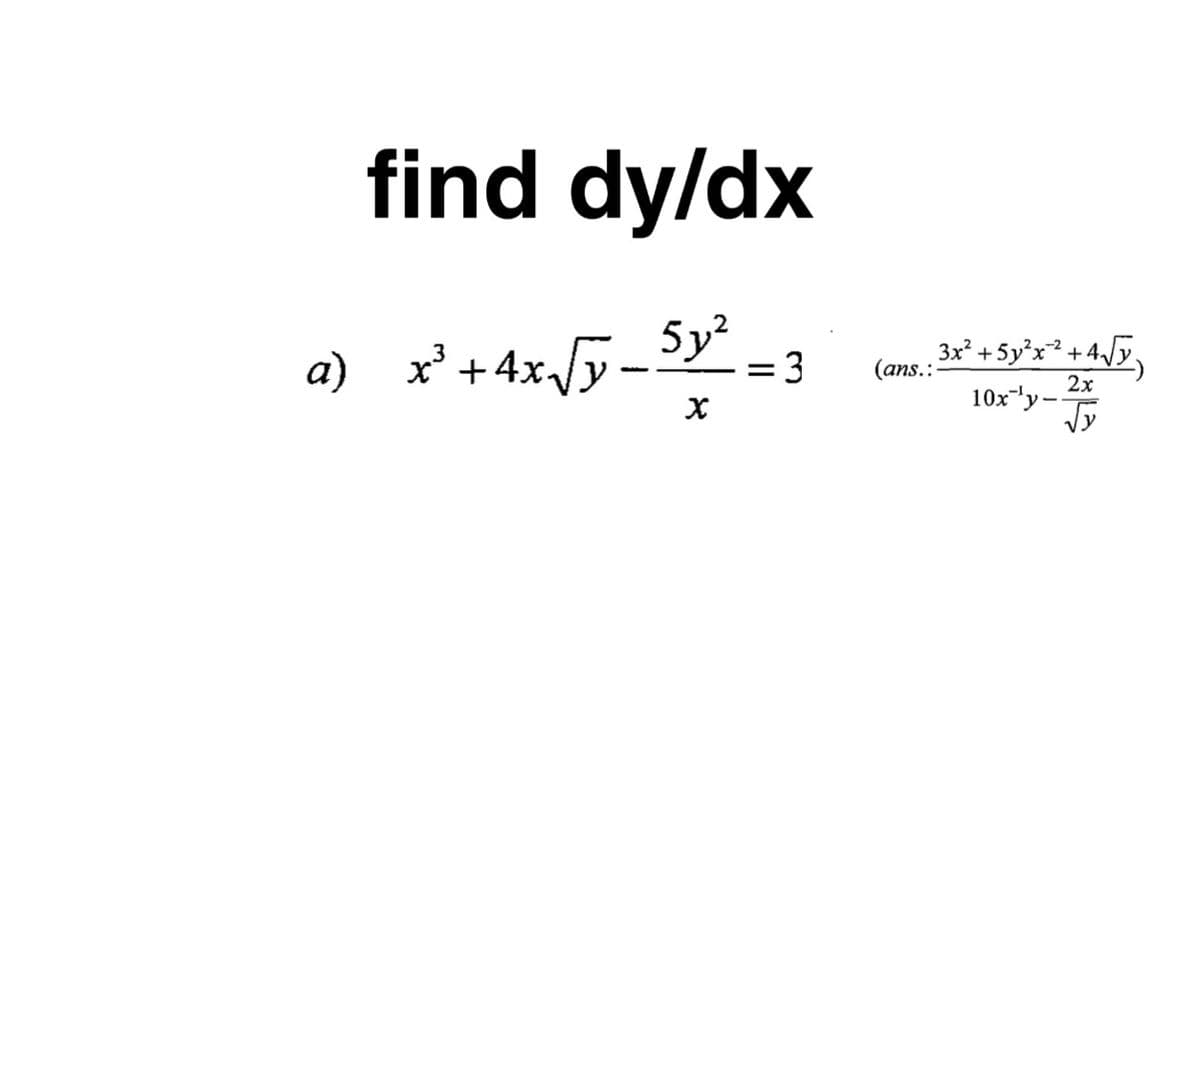 find dy/dx
' + 4xJy=$y =3
+4xJy-
5y²
(ans. : 3x* + 5y°x* + 4,/y,
а) х
= 3
%|
2x
10x'y-Ty
